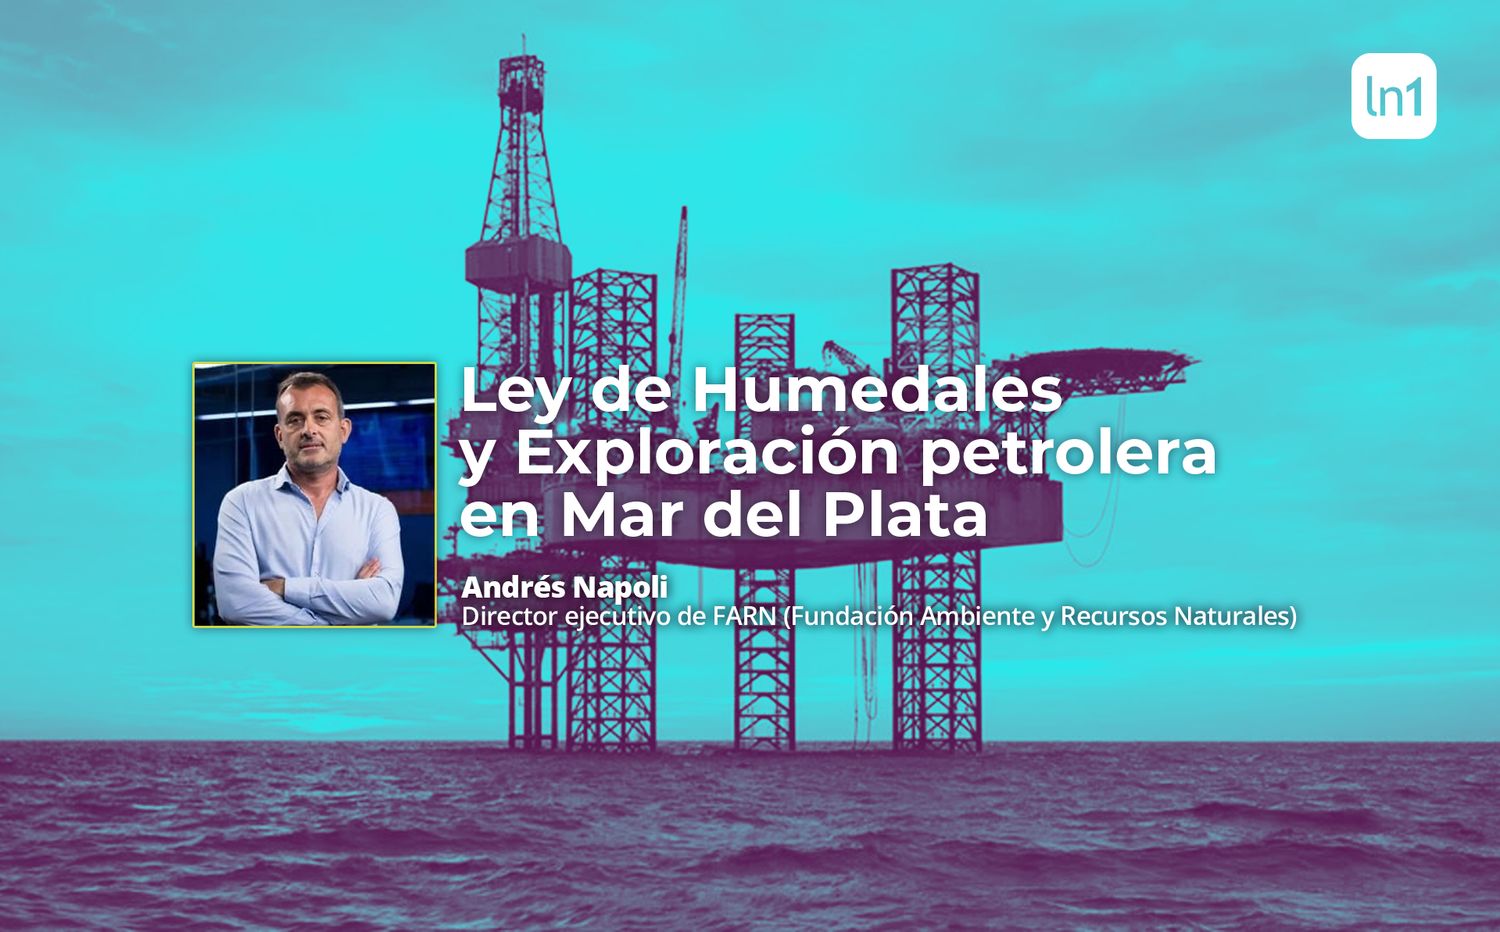 Exploración petrolera en Mar del Plata: “La Provincia no va a obtener nada por ese proyecto, no tiene jurisdicción, es marketing”, afirmó Andrés Nápoli